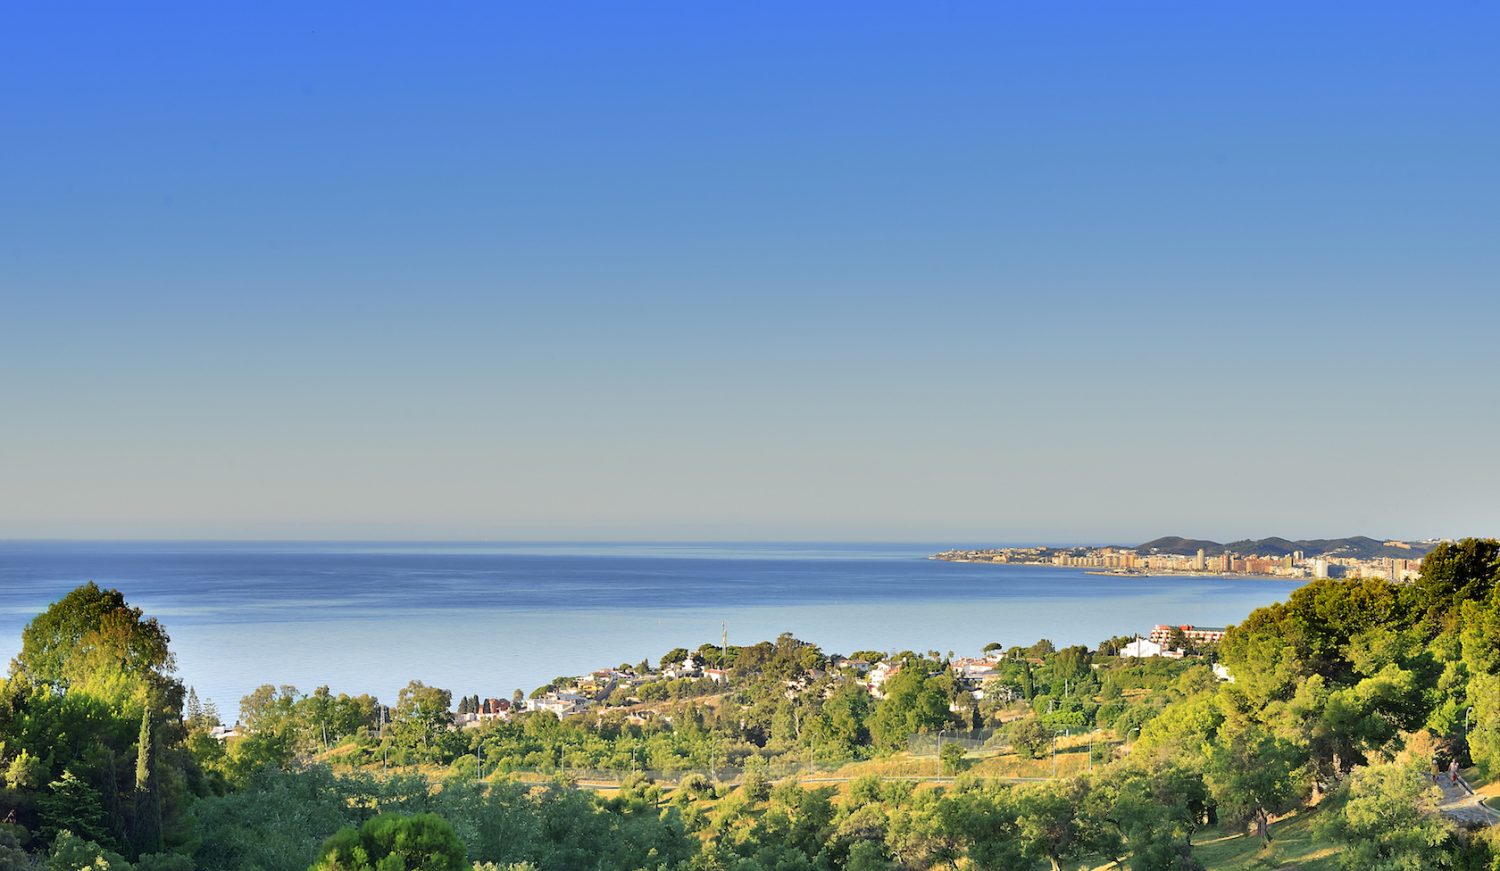 Toutes les villas offrent une vue panoramique imprenable sur la mer Méditerranée